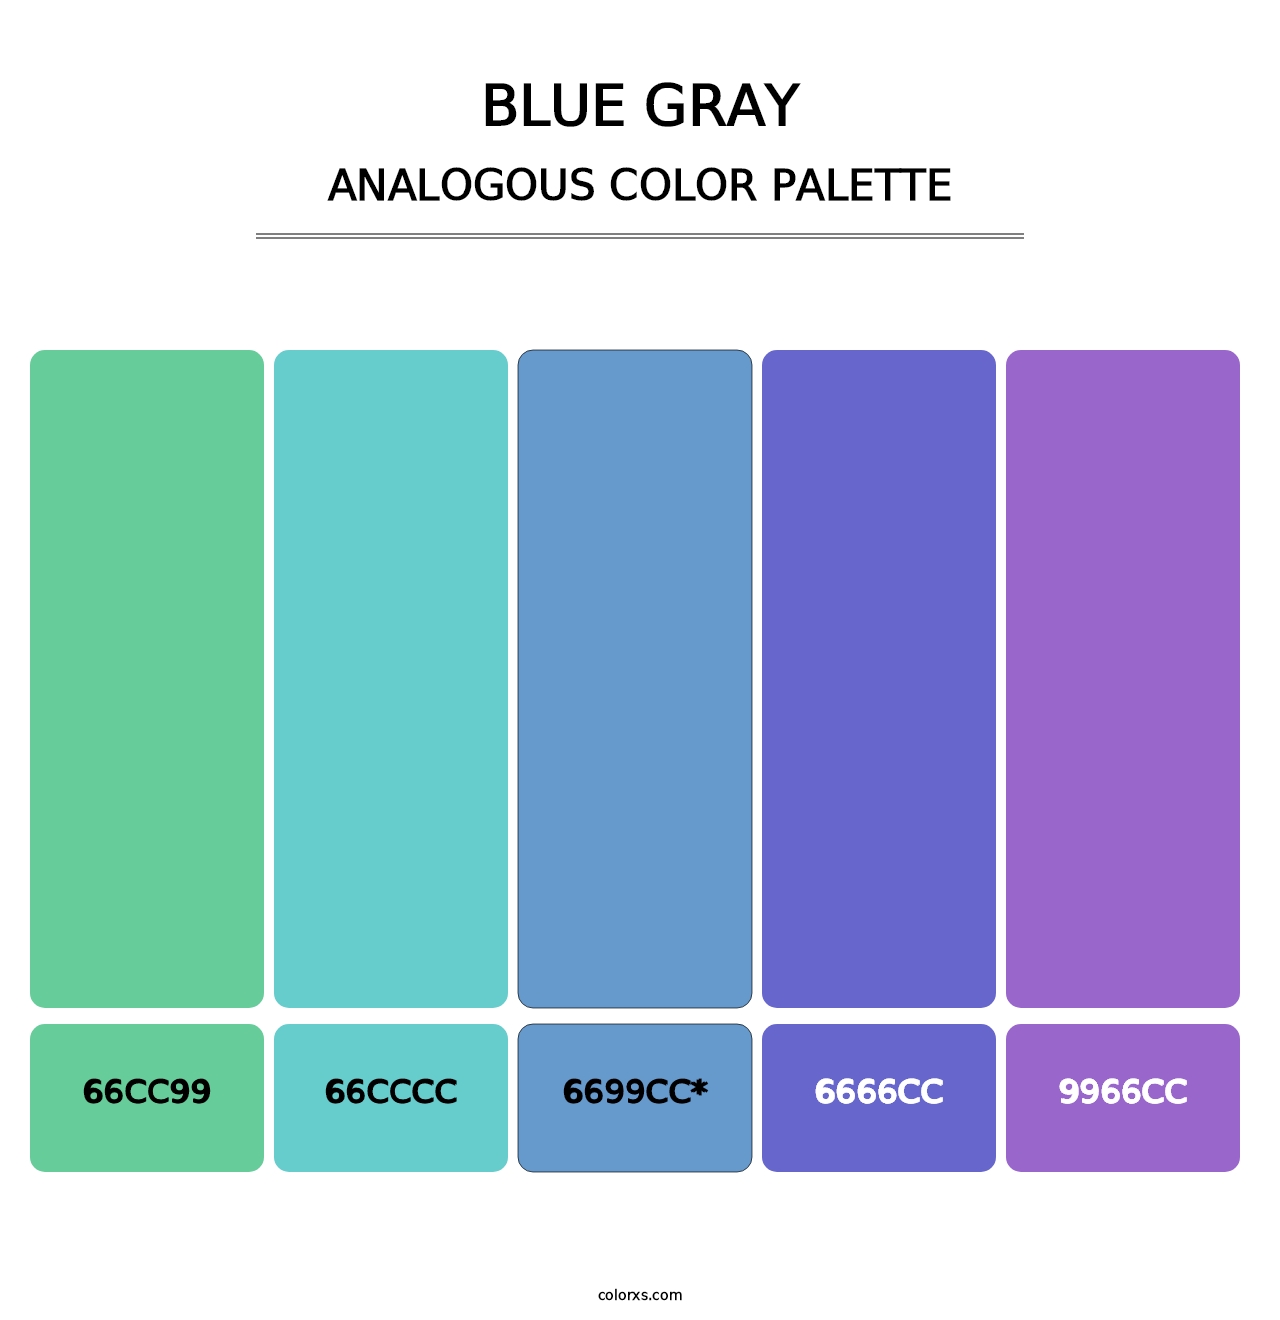 Blue Gray - Analogous Color Palette